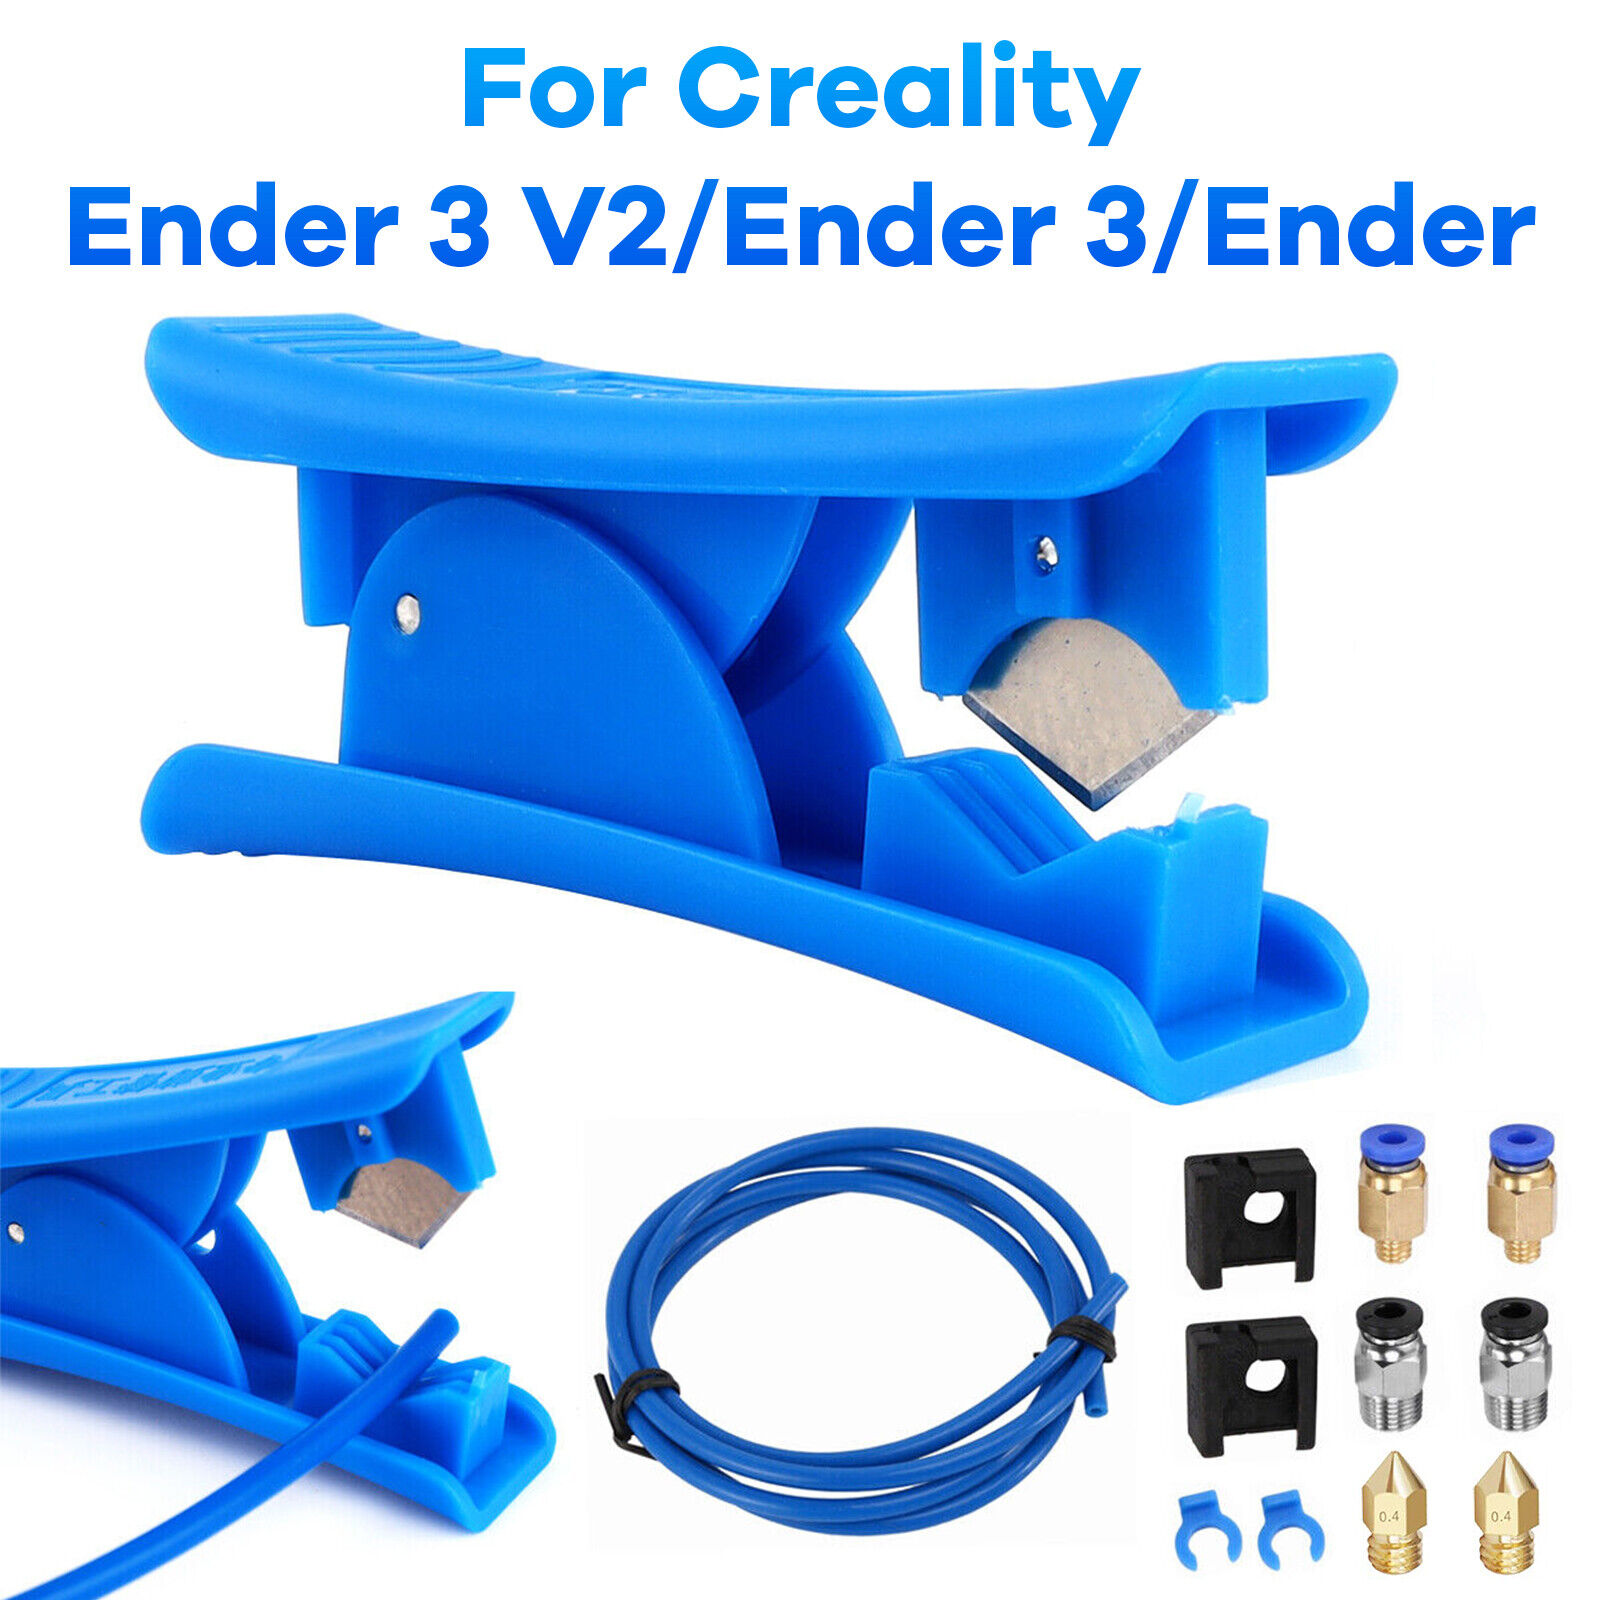 MK8 Capricorn Bowden PTFE Tubing XS-Series For Creality Ender 3 V2/Ender 3/Ender